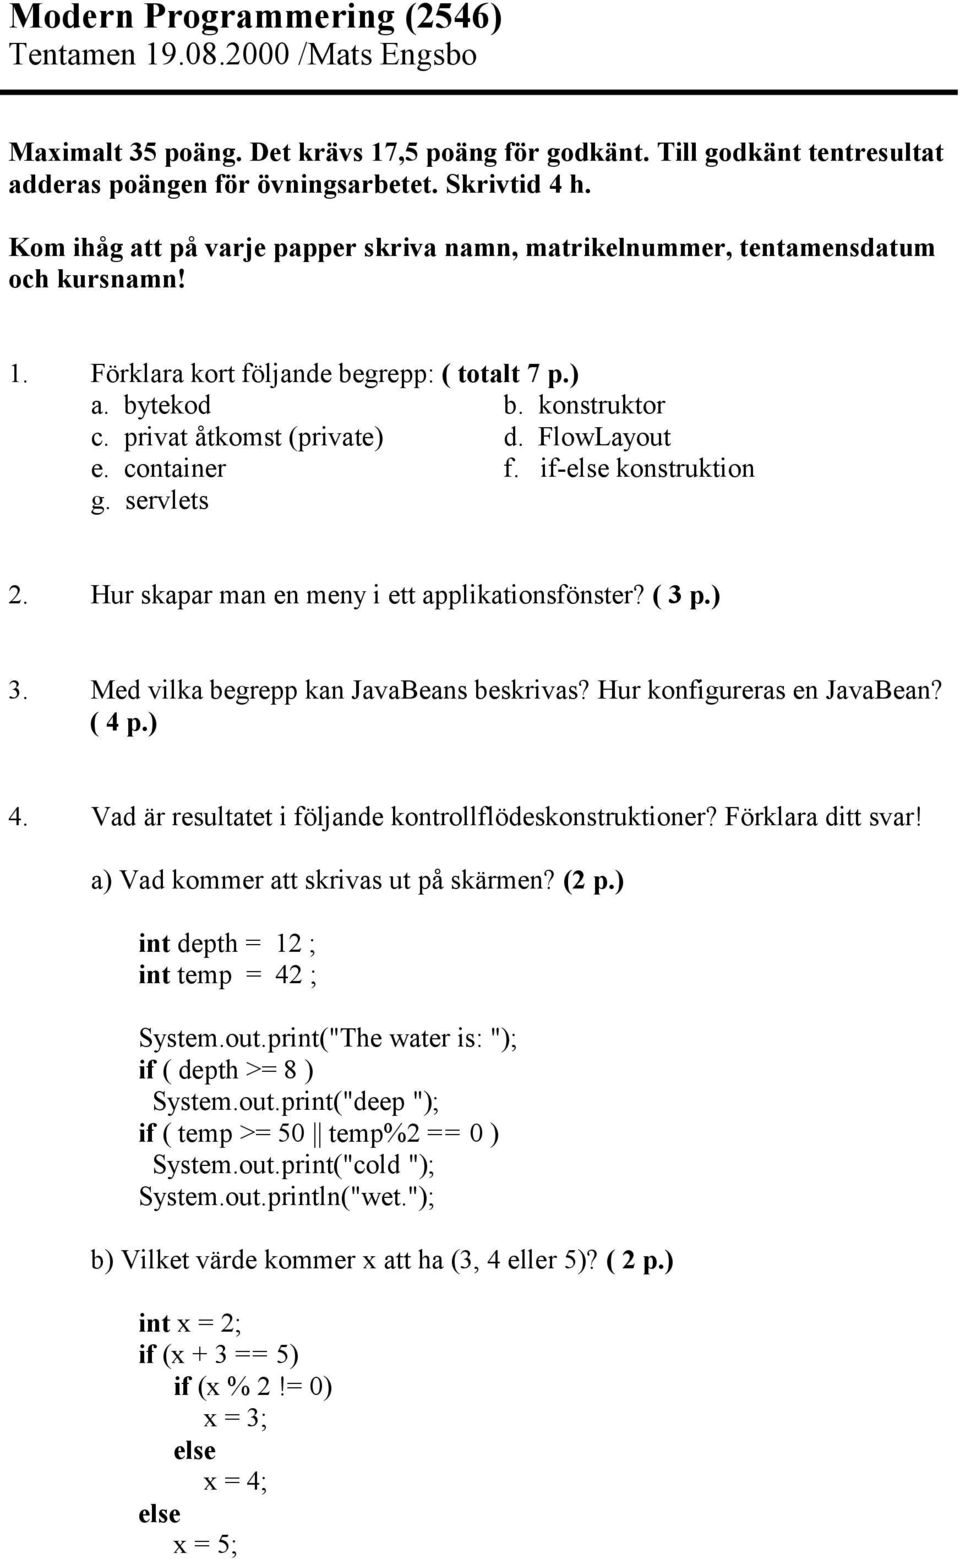 FlowLayout e. container f. if- konstruktion g. servlets 2. Hur skapar man en meny i ett applikationsfönster? ( 3 p.) 3. Med vilka begrepp kan JavaBeans beskrivas? Hur konfigureras en JavaBean? ( 4 p.